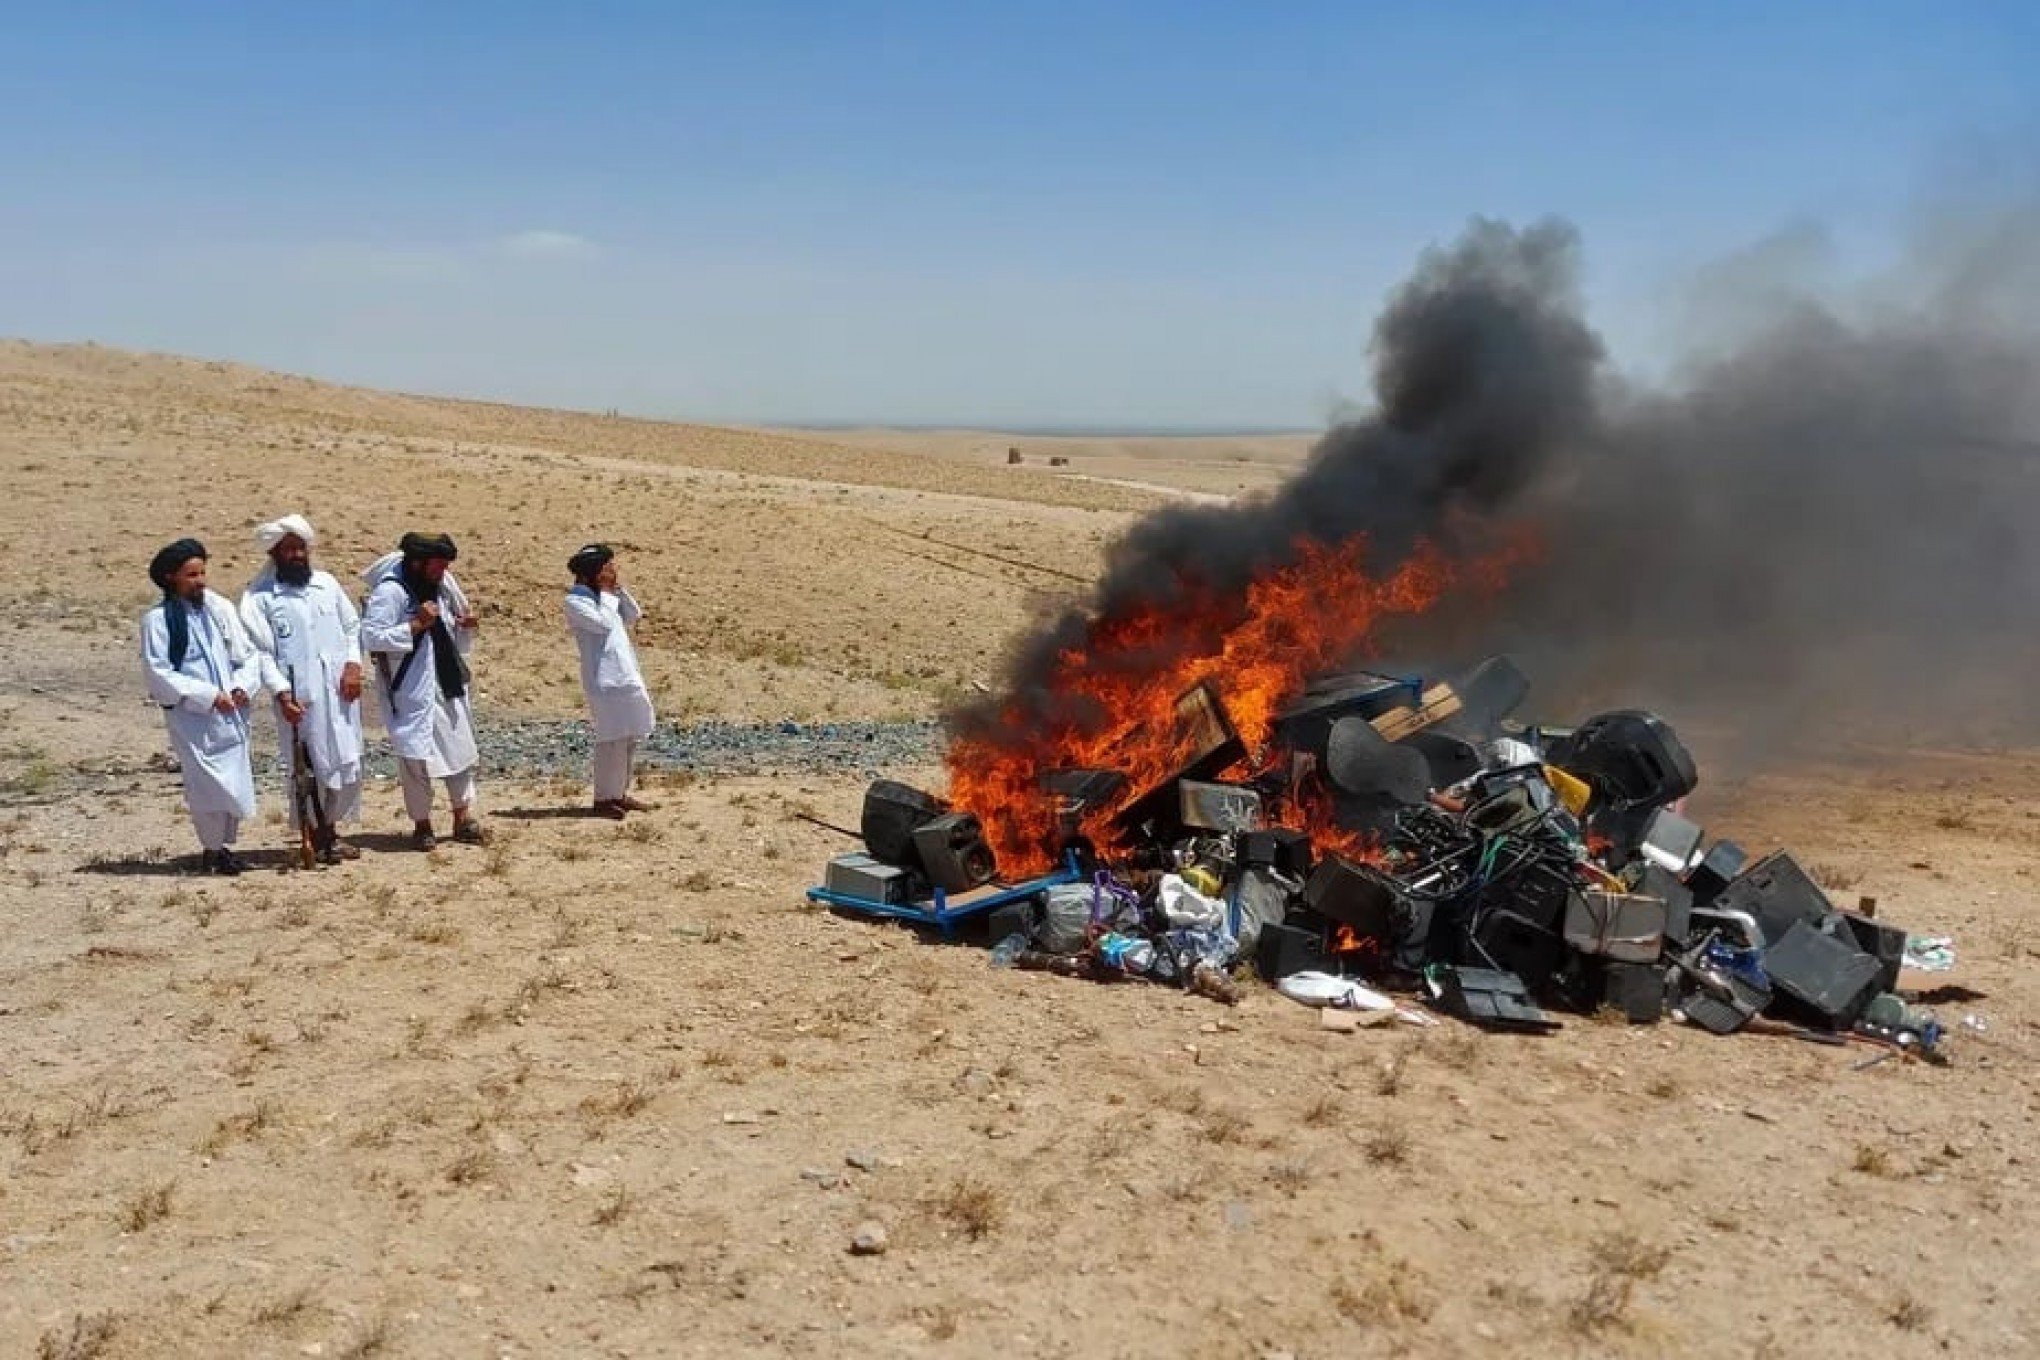 LEIS RIGOROSAS: Talibã queima instrumentos musicais por considerar a música uma forma de corrupção moral